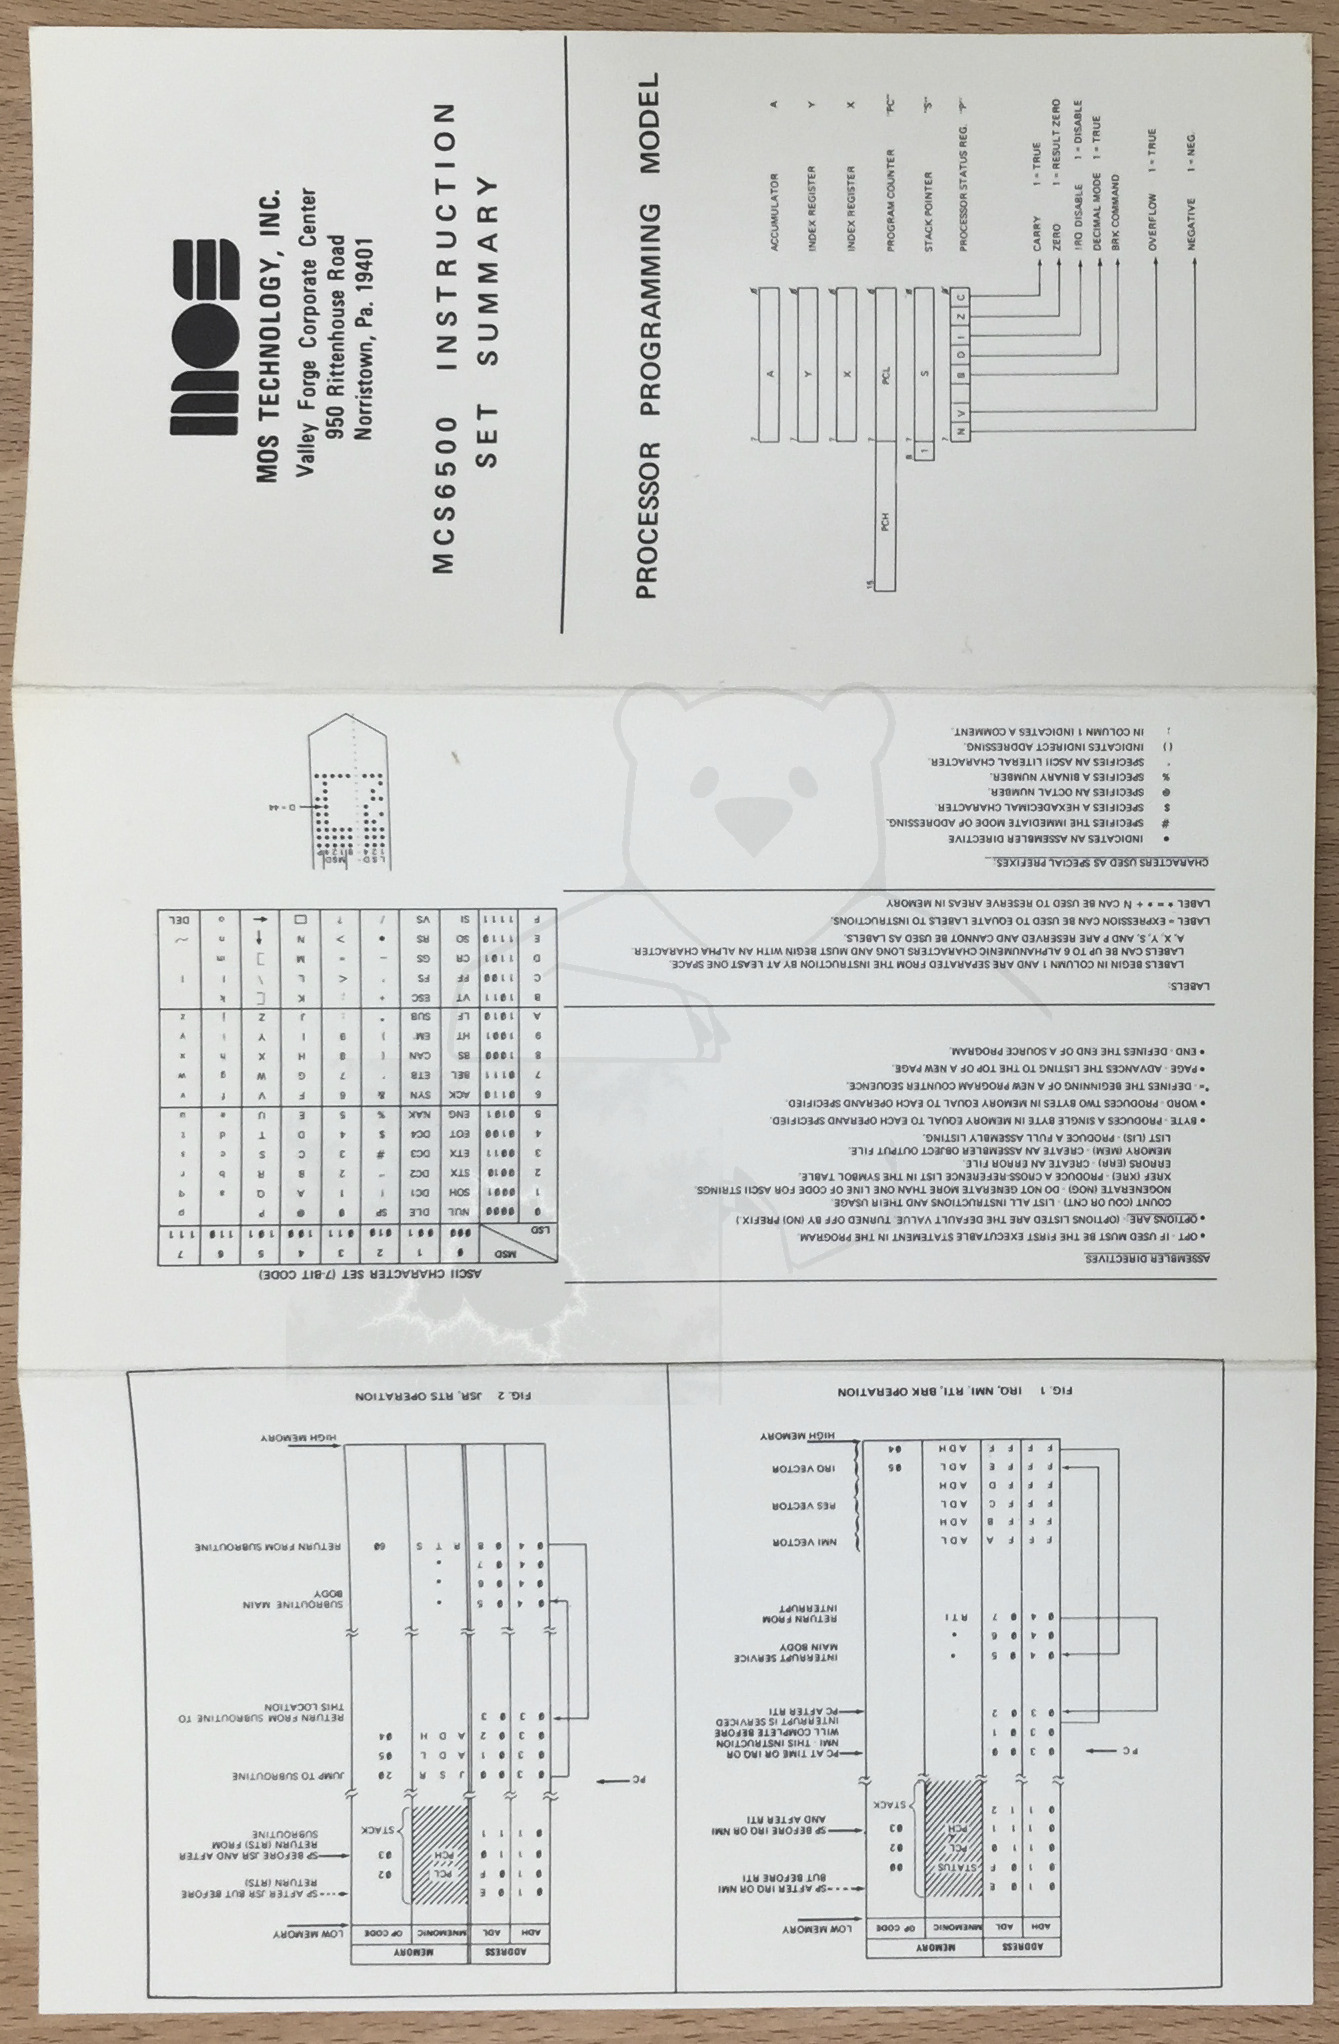 Commodore MOS KIM-1 - Zusammenfassung "6502 Instruction Set